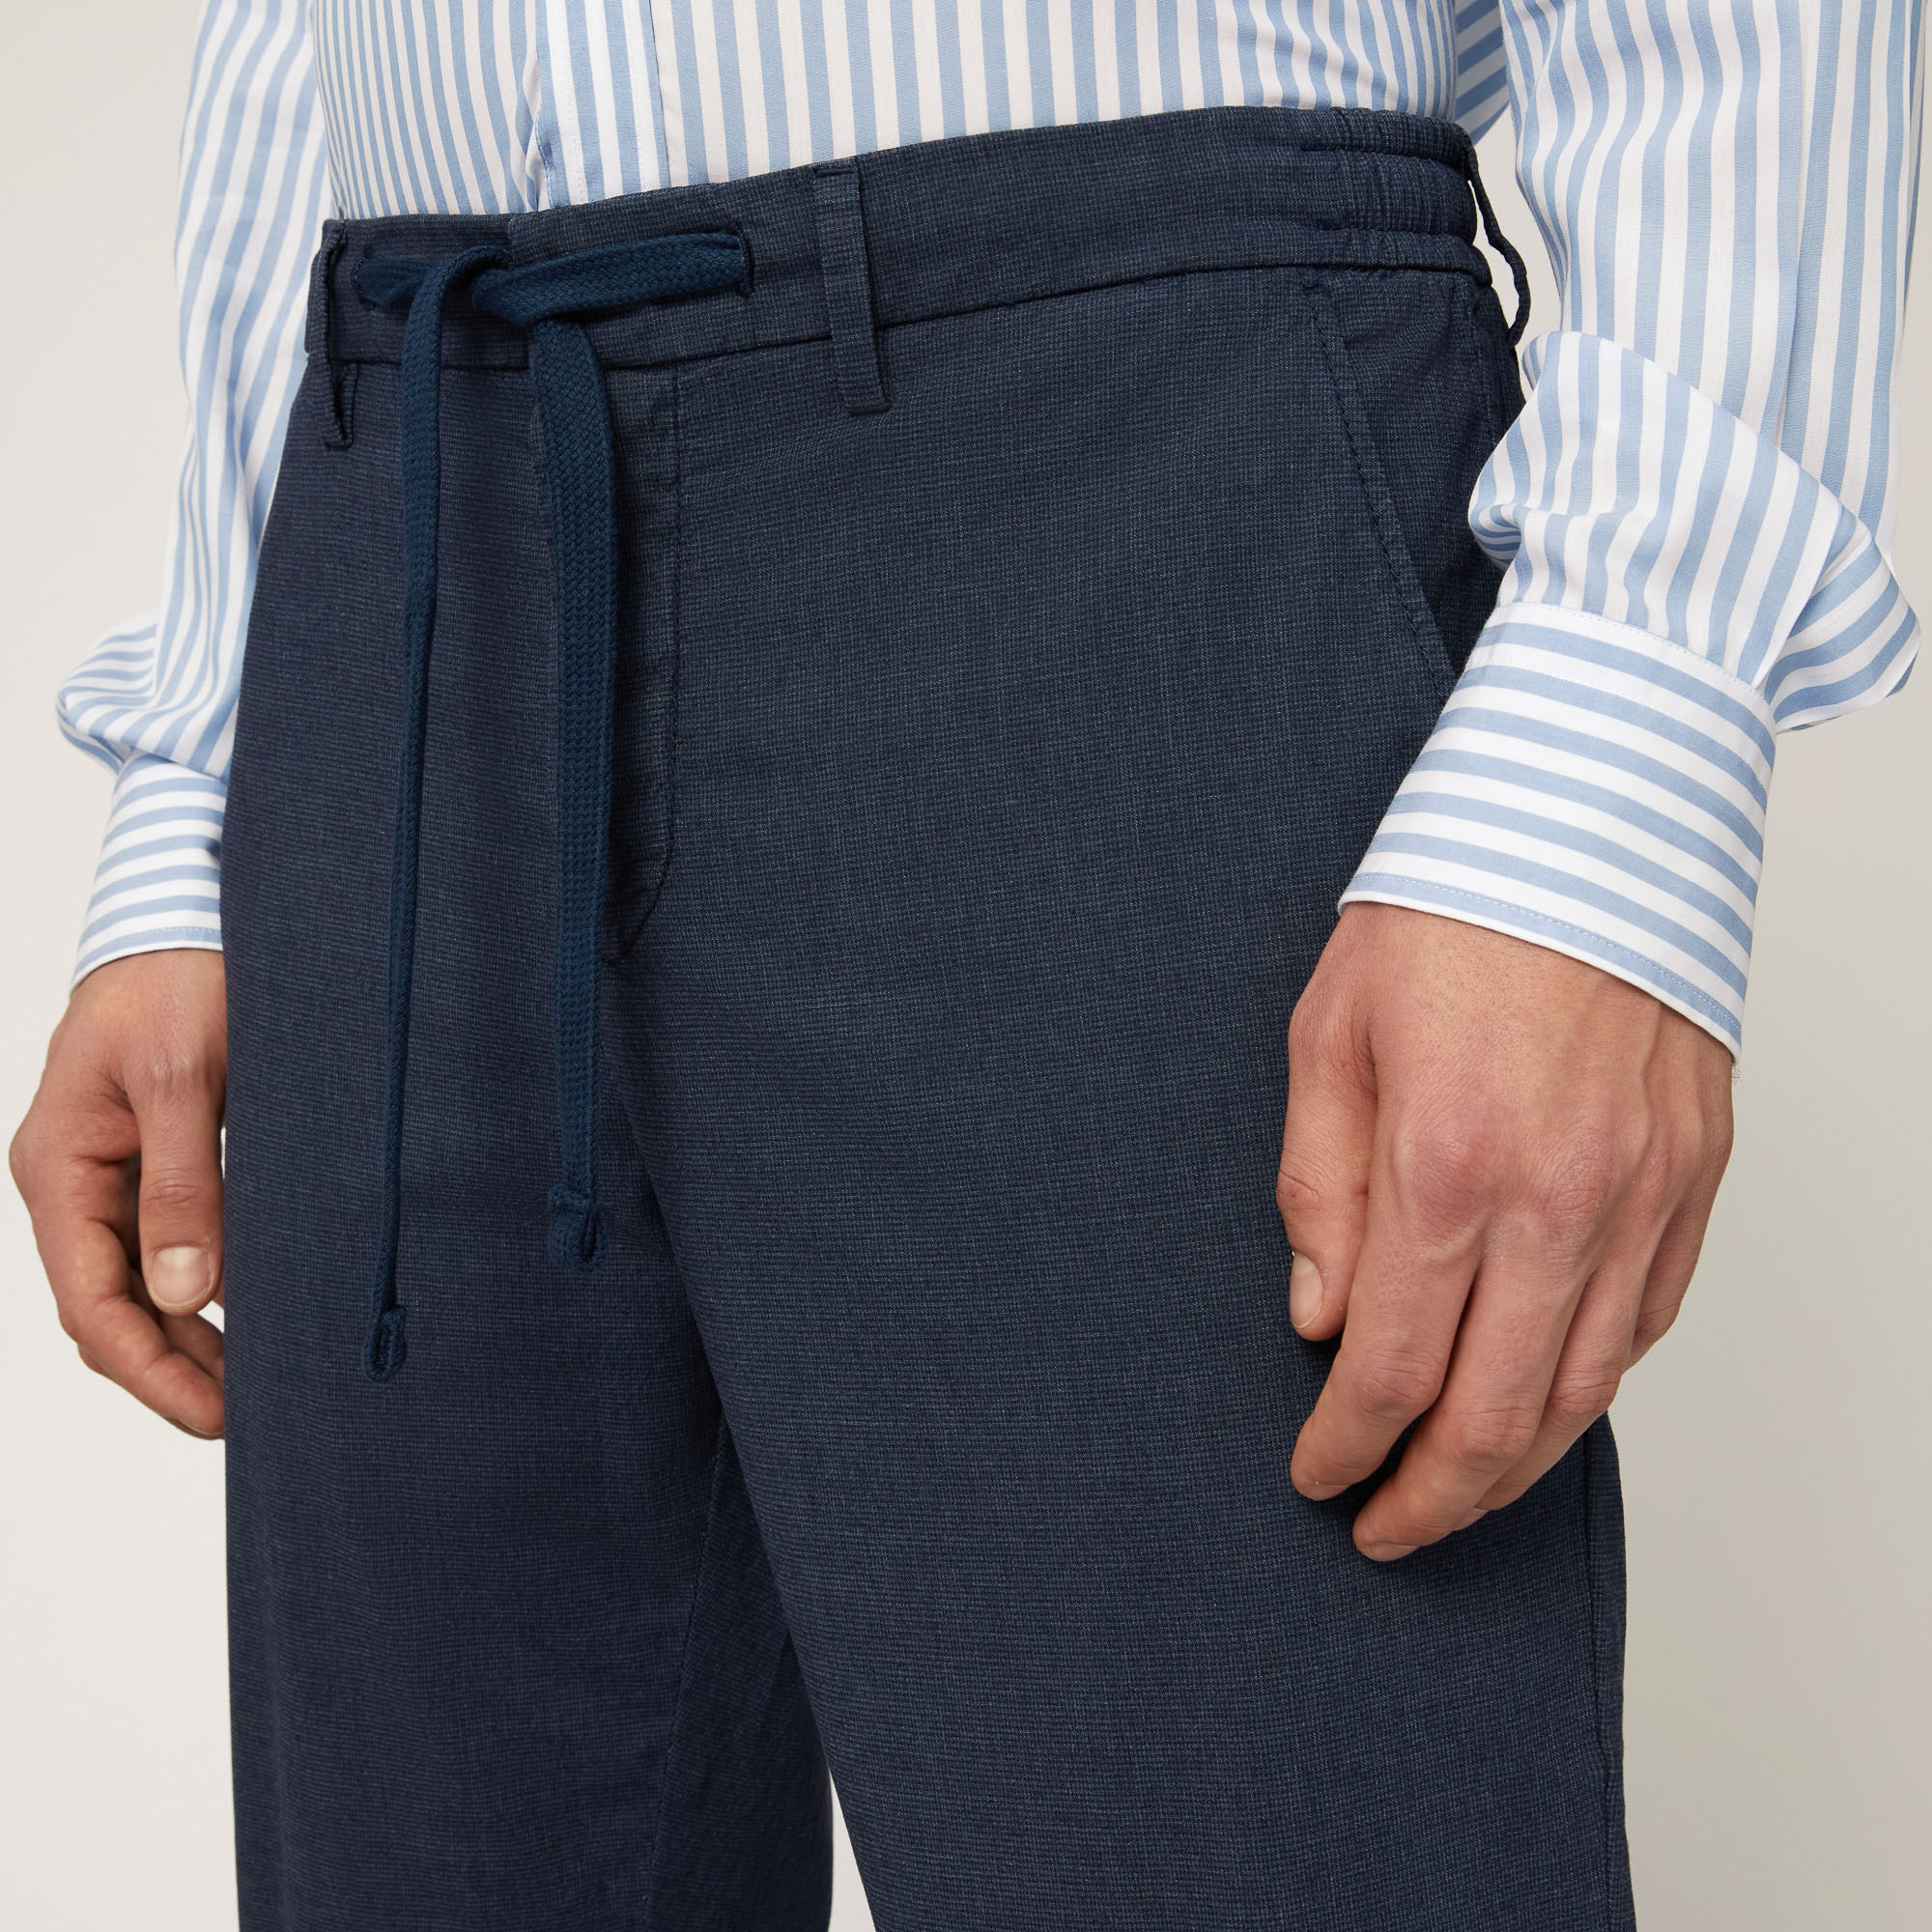 Cotton-Blend Jogging Pants, Blue, large image number 2